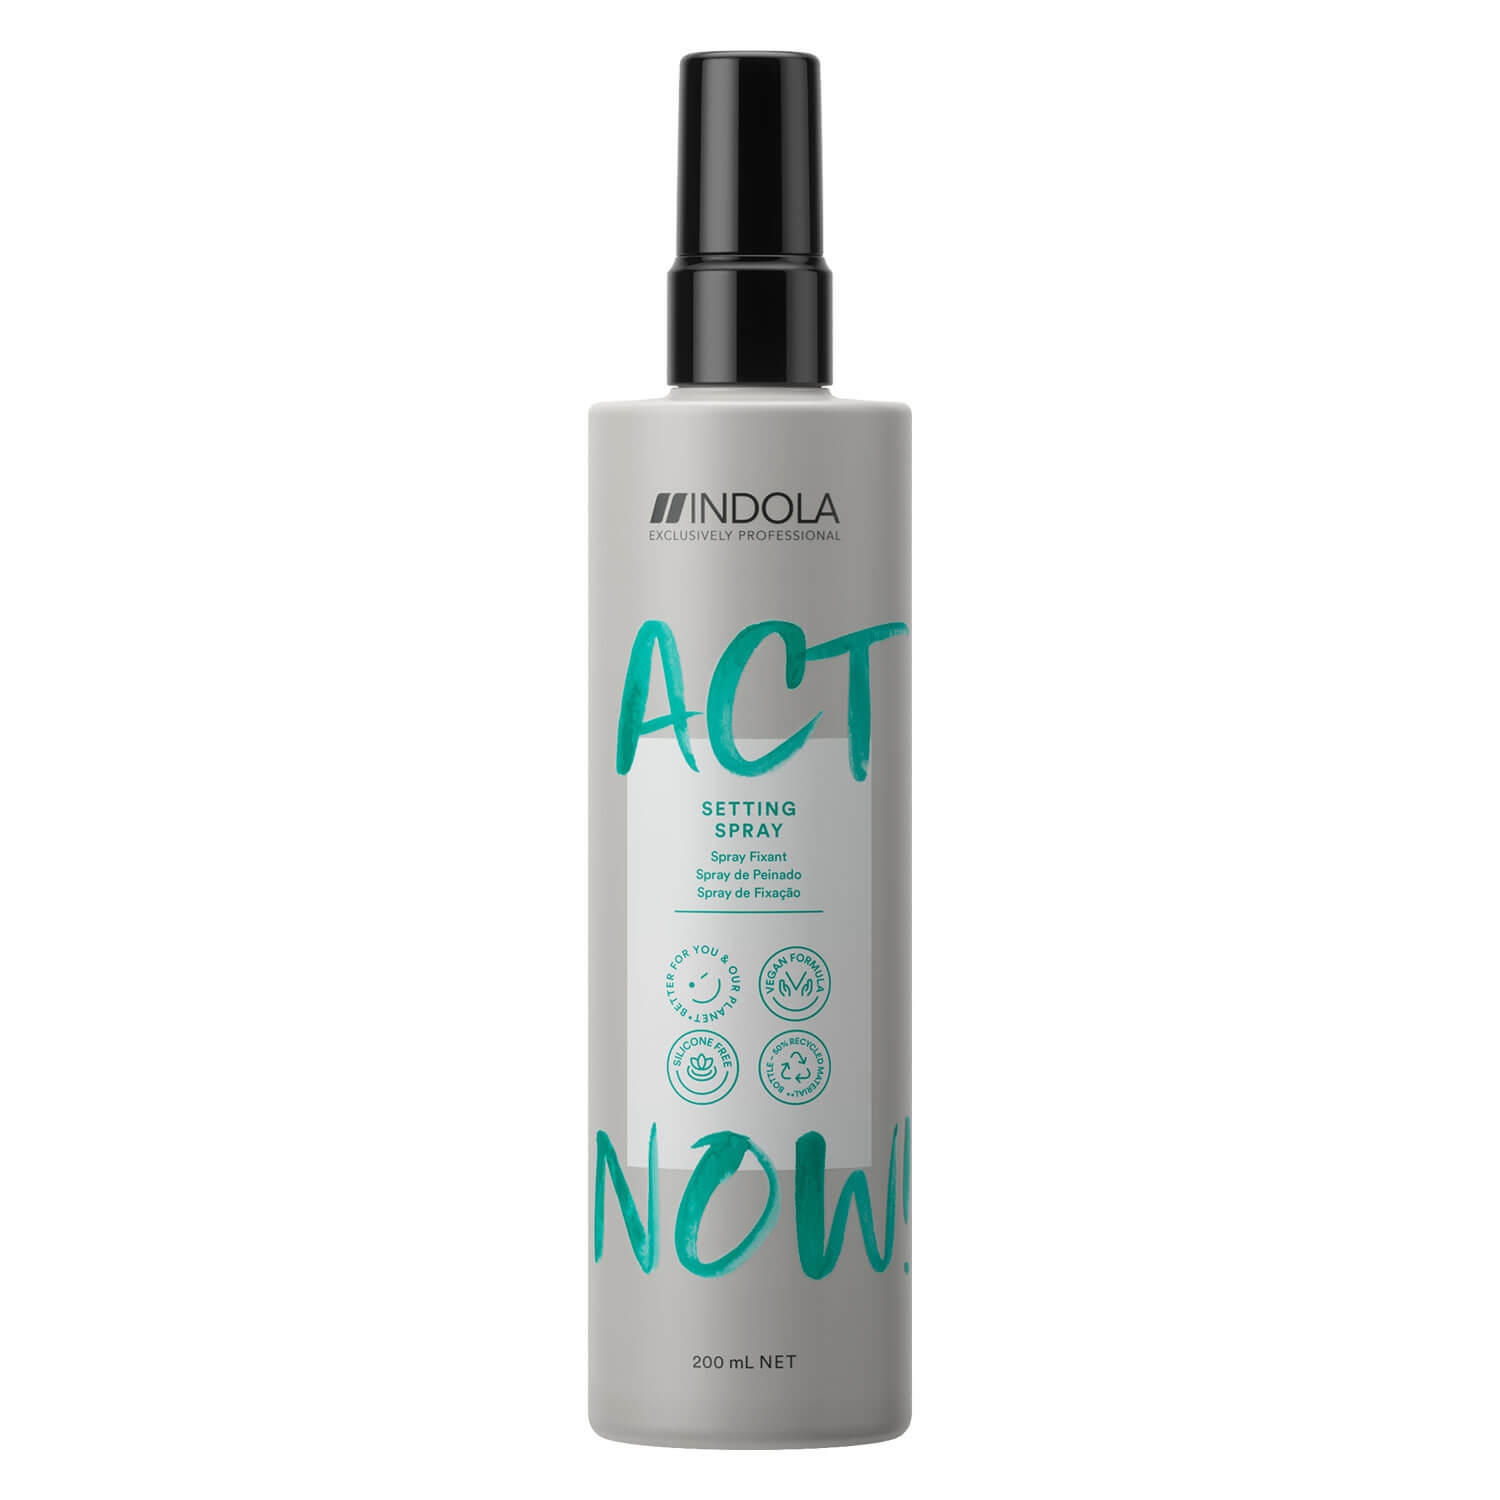 Produktbild von ACT NOW - Setting Spray